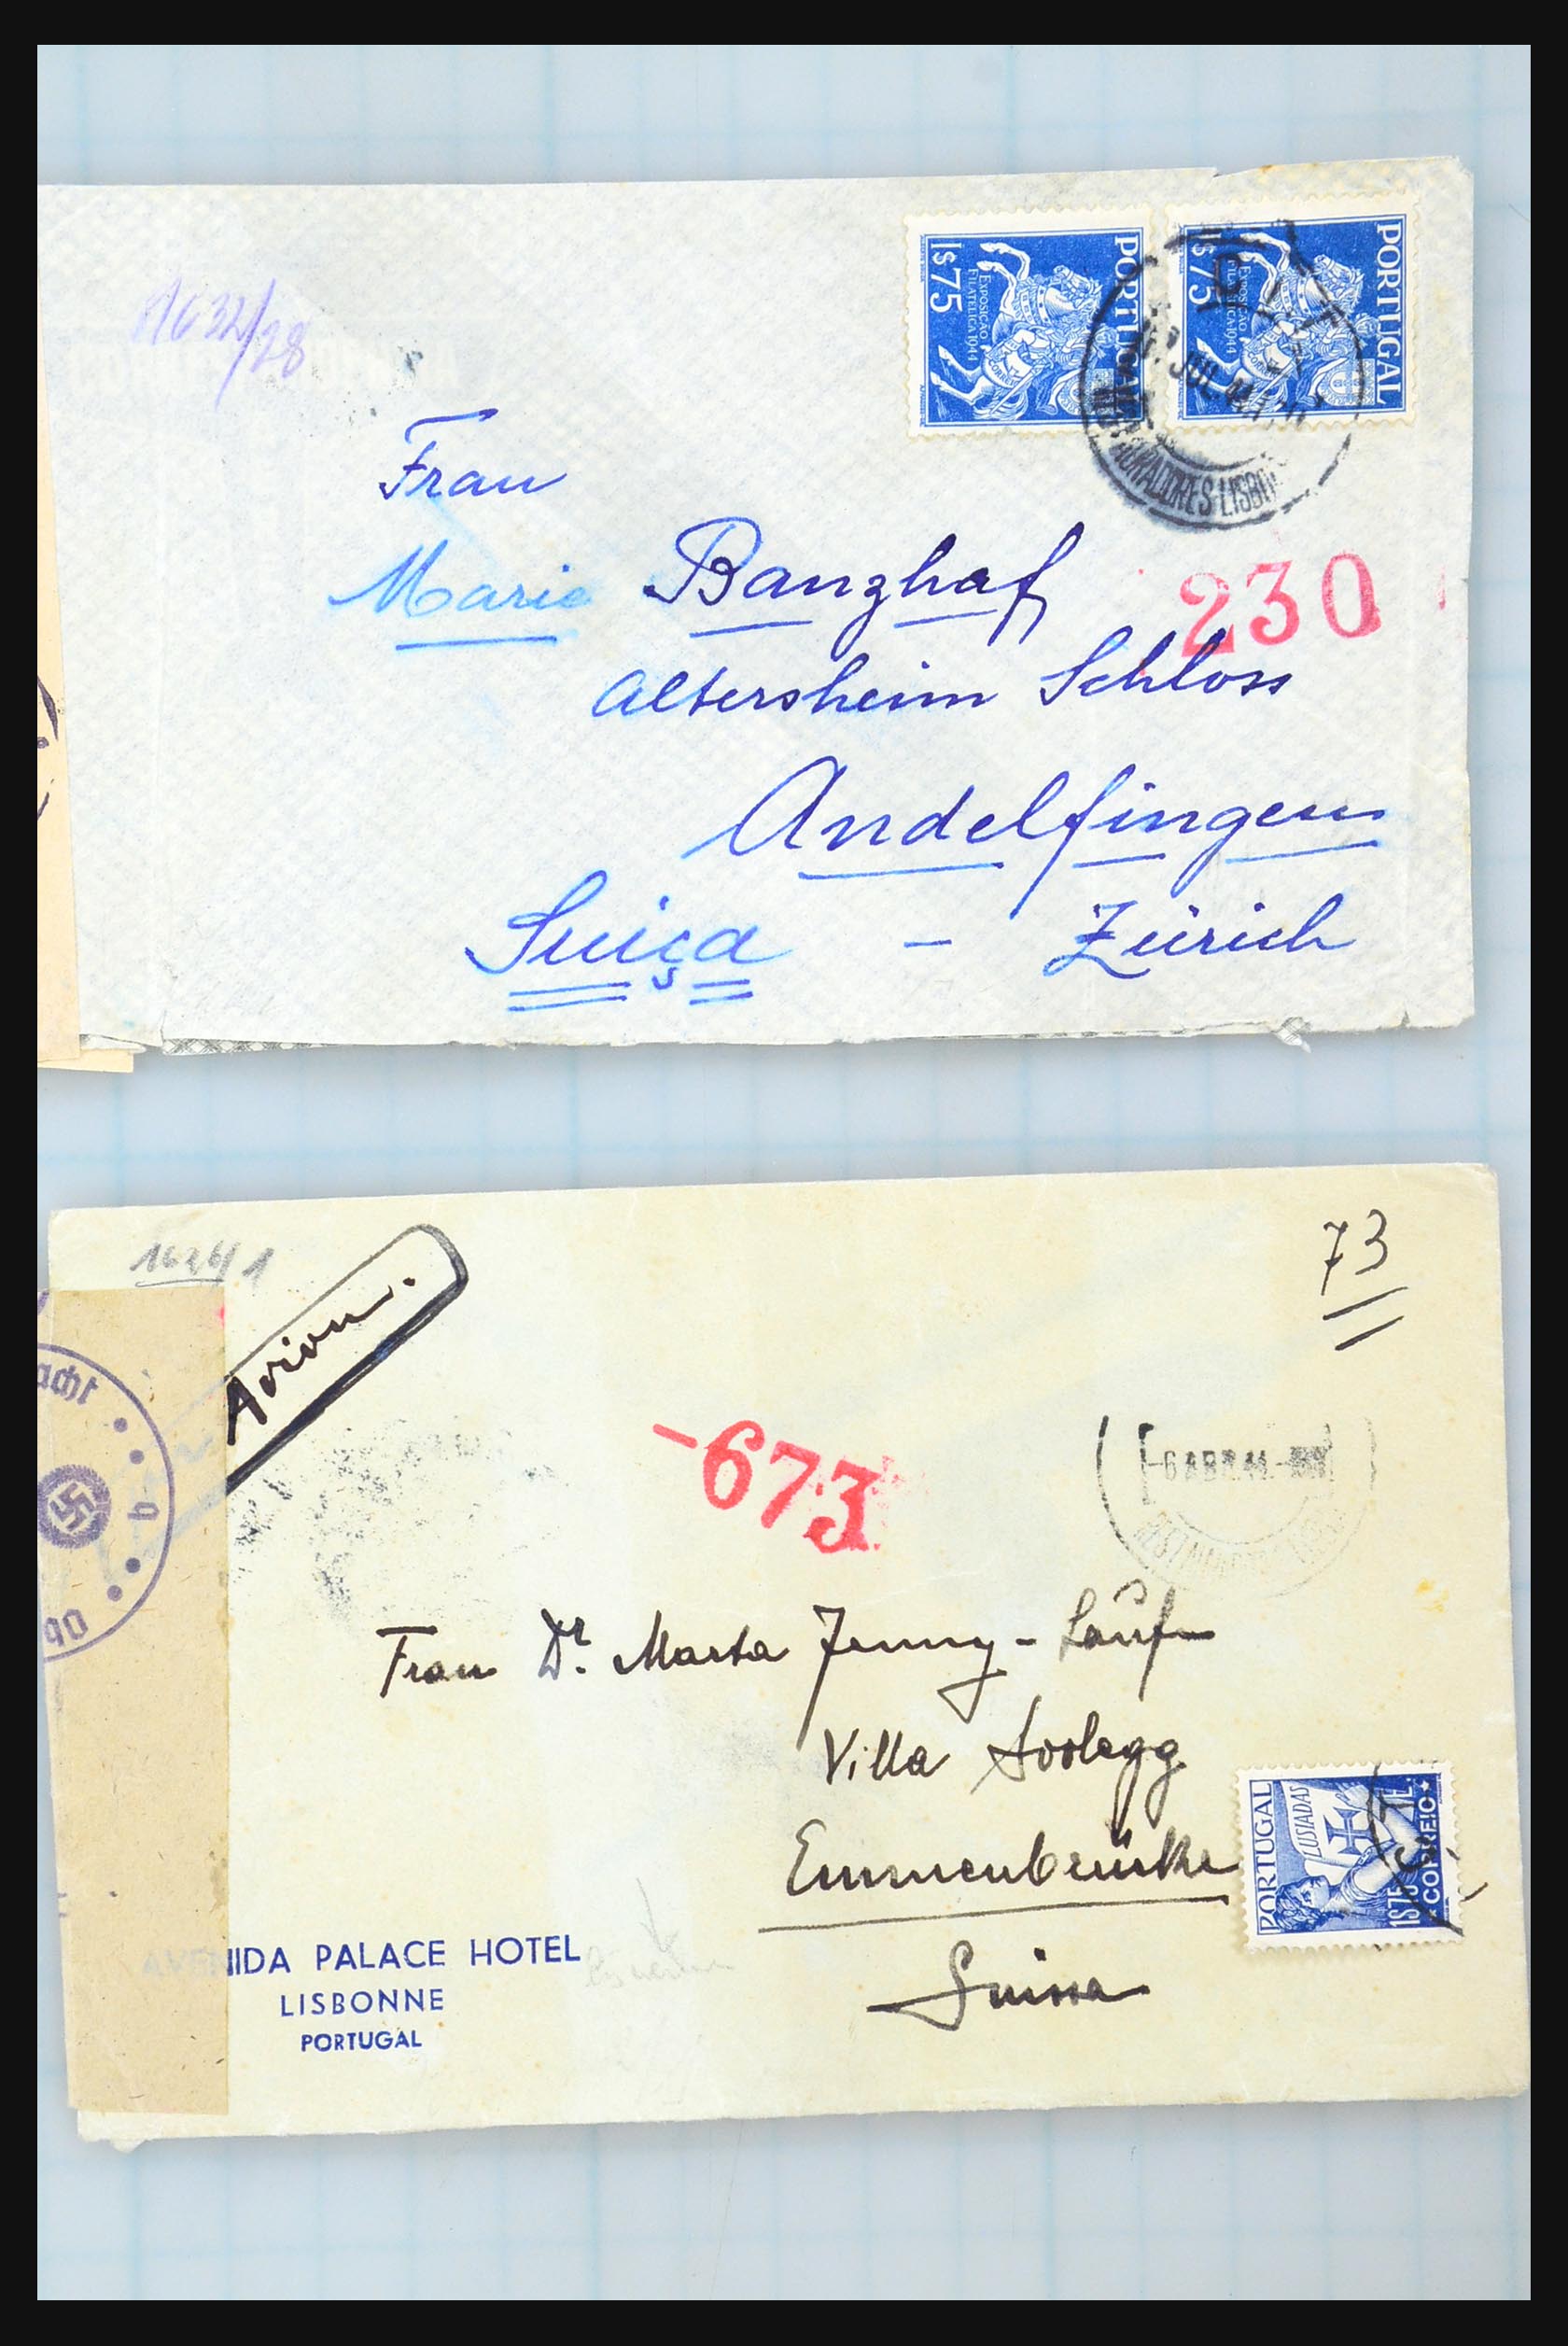 31358 250 - 31358 Portugal/Luxemburg/Griekenland brieven 1880-1960.